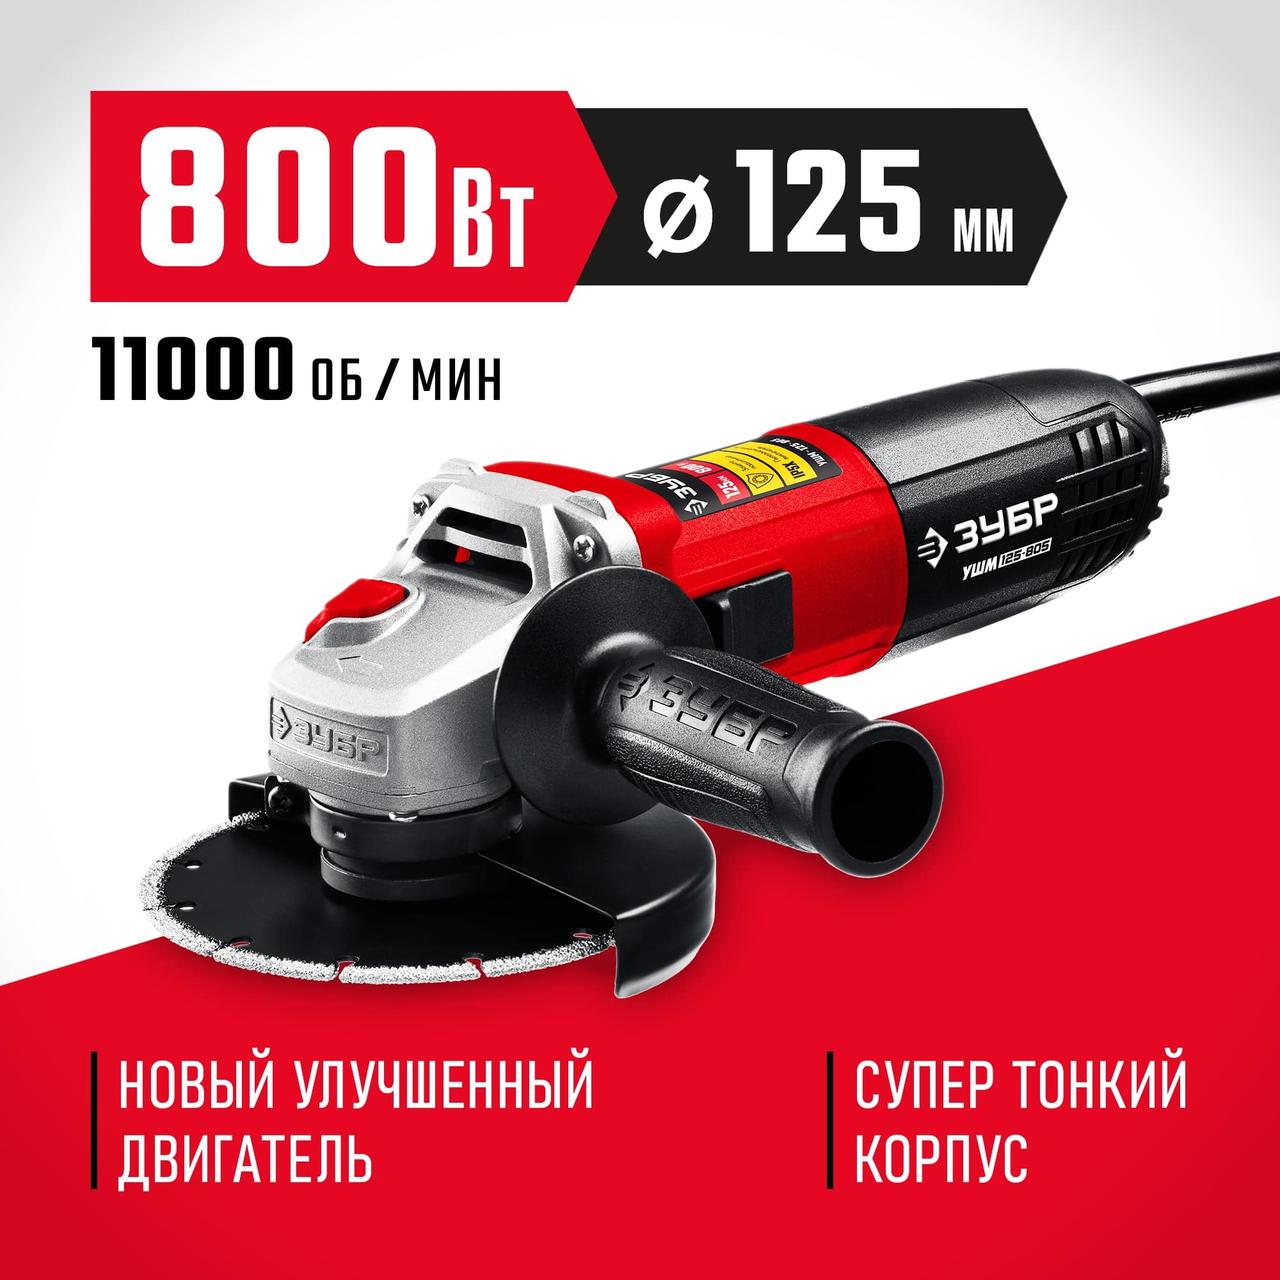 ЗУБР 800 Вт, 125 мм, углошлифовальная машина (болгарка) УШМ-125-805, фото 1